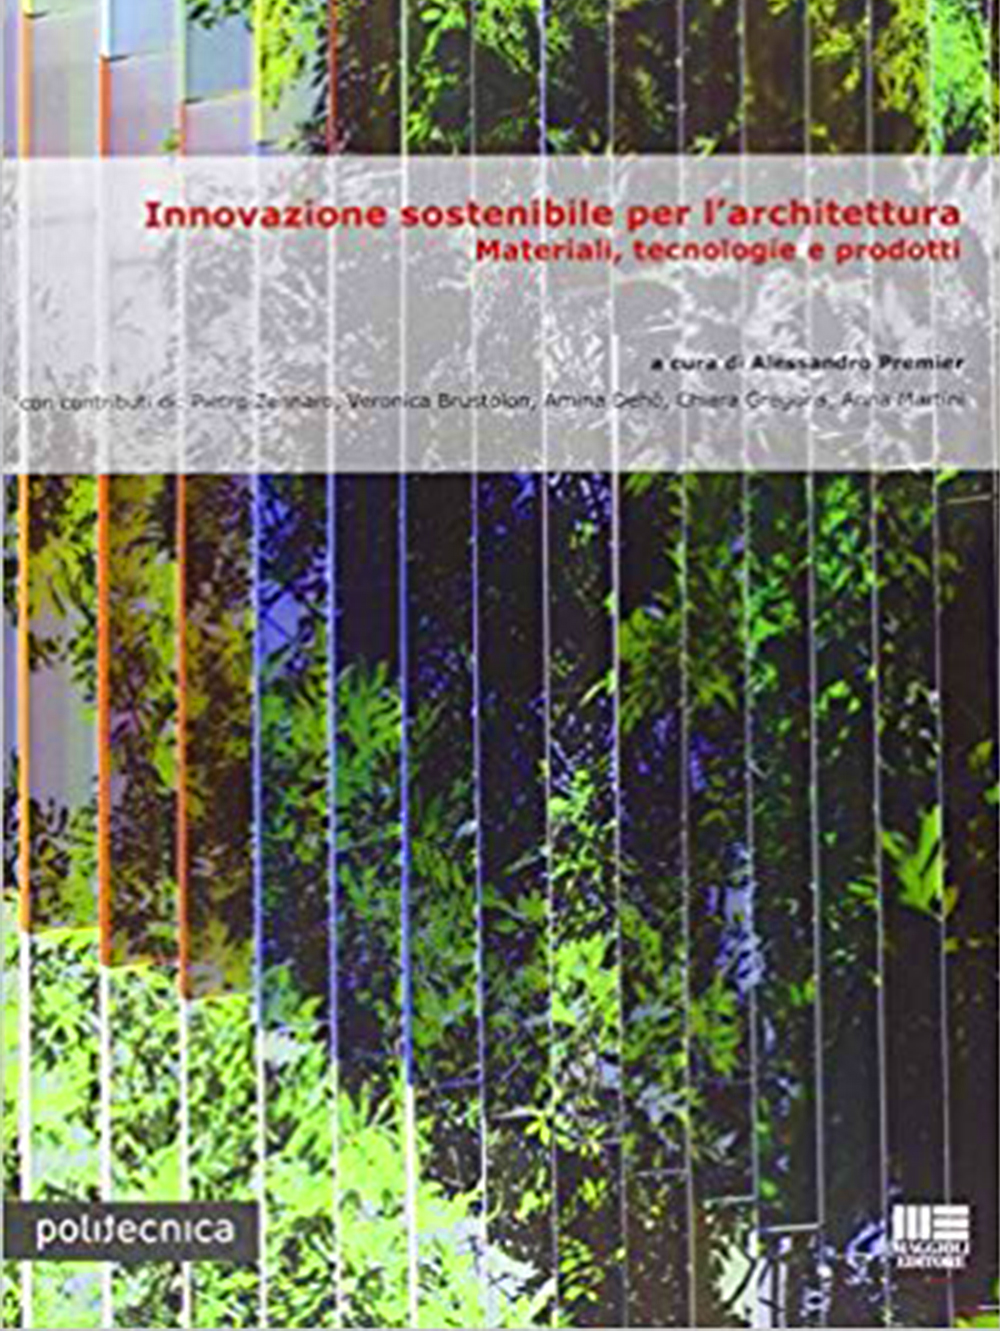 2020 . 02 Premier Innovazione sostenibile architettura